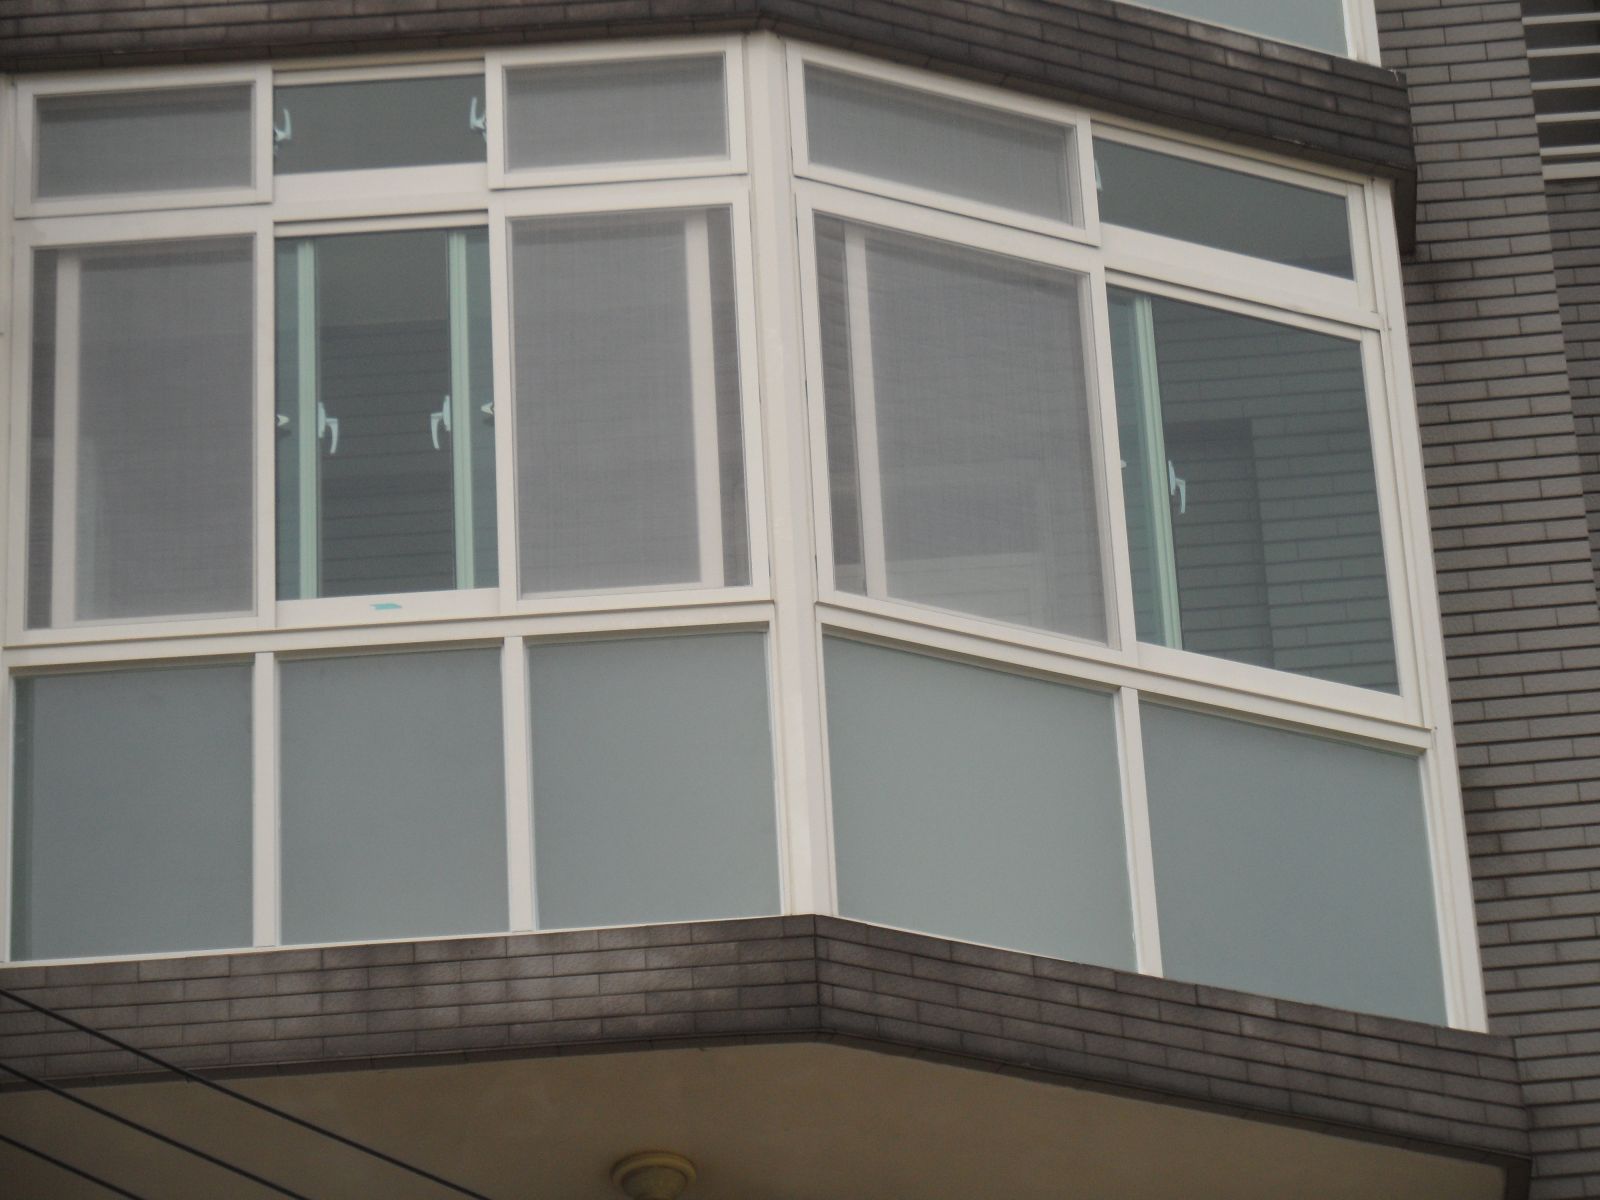 4樓陽台氣密窗8mm綠色強化,95公分為欄杆部份採用8mm噴砂強化